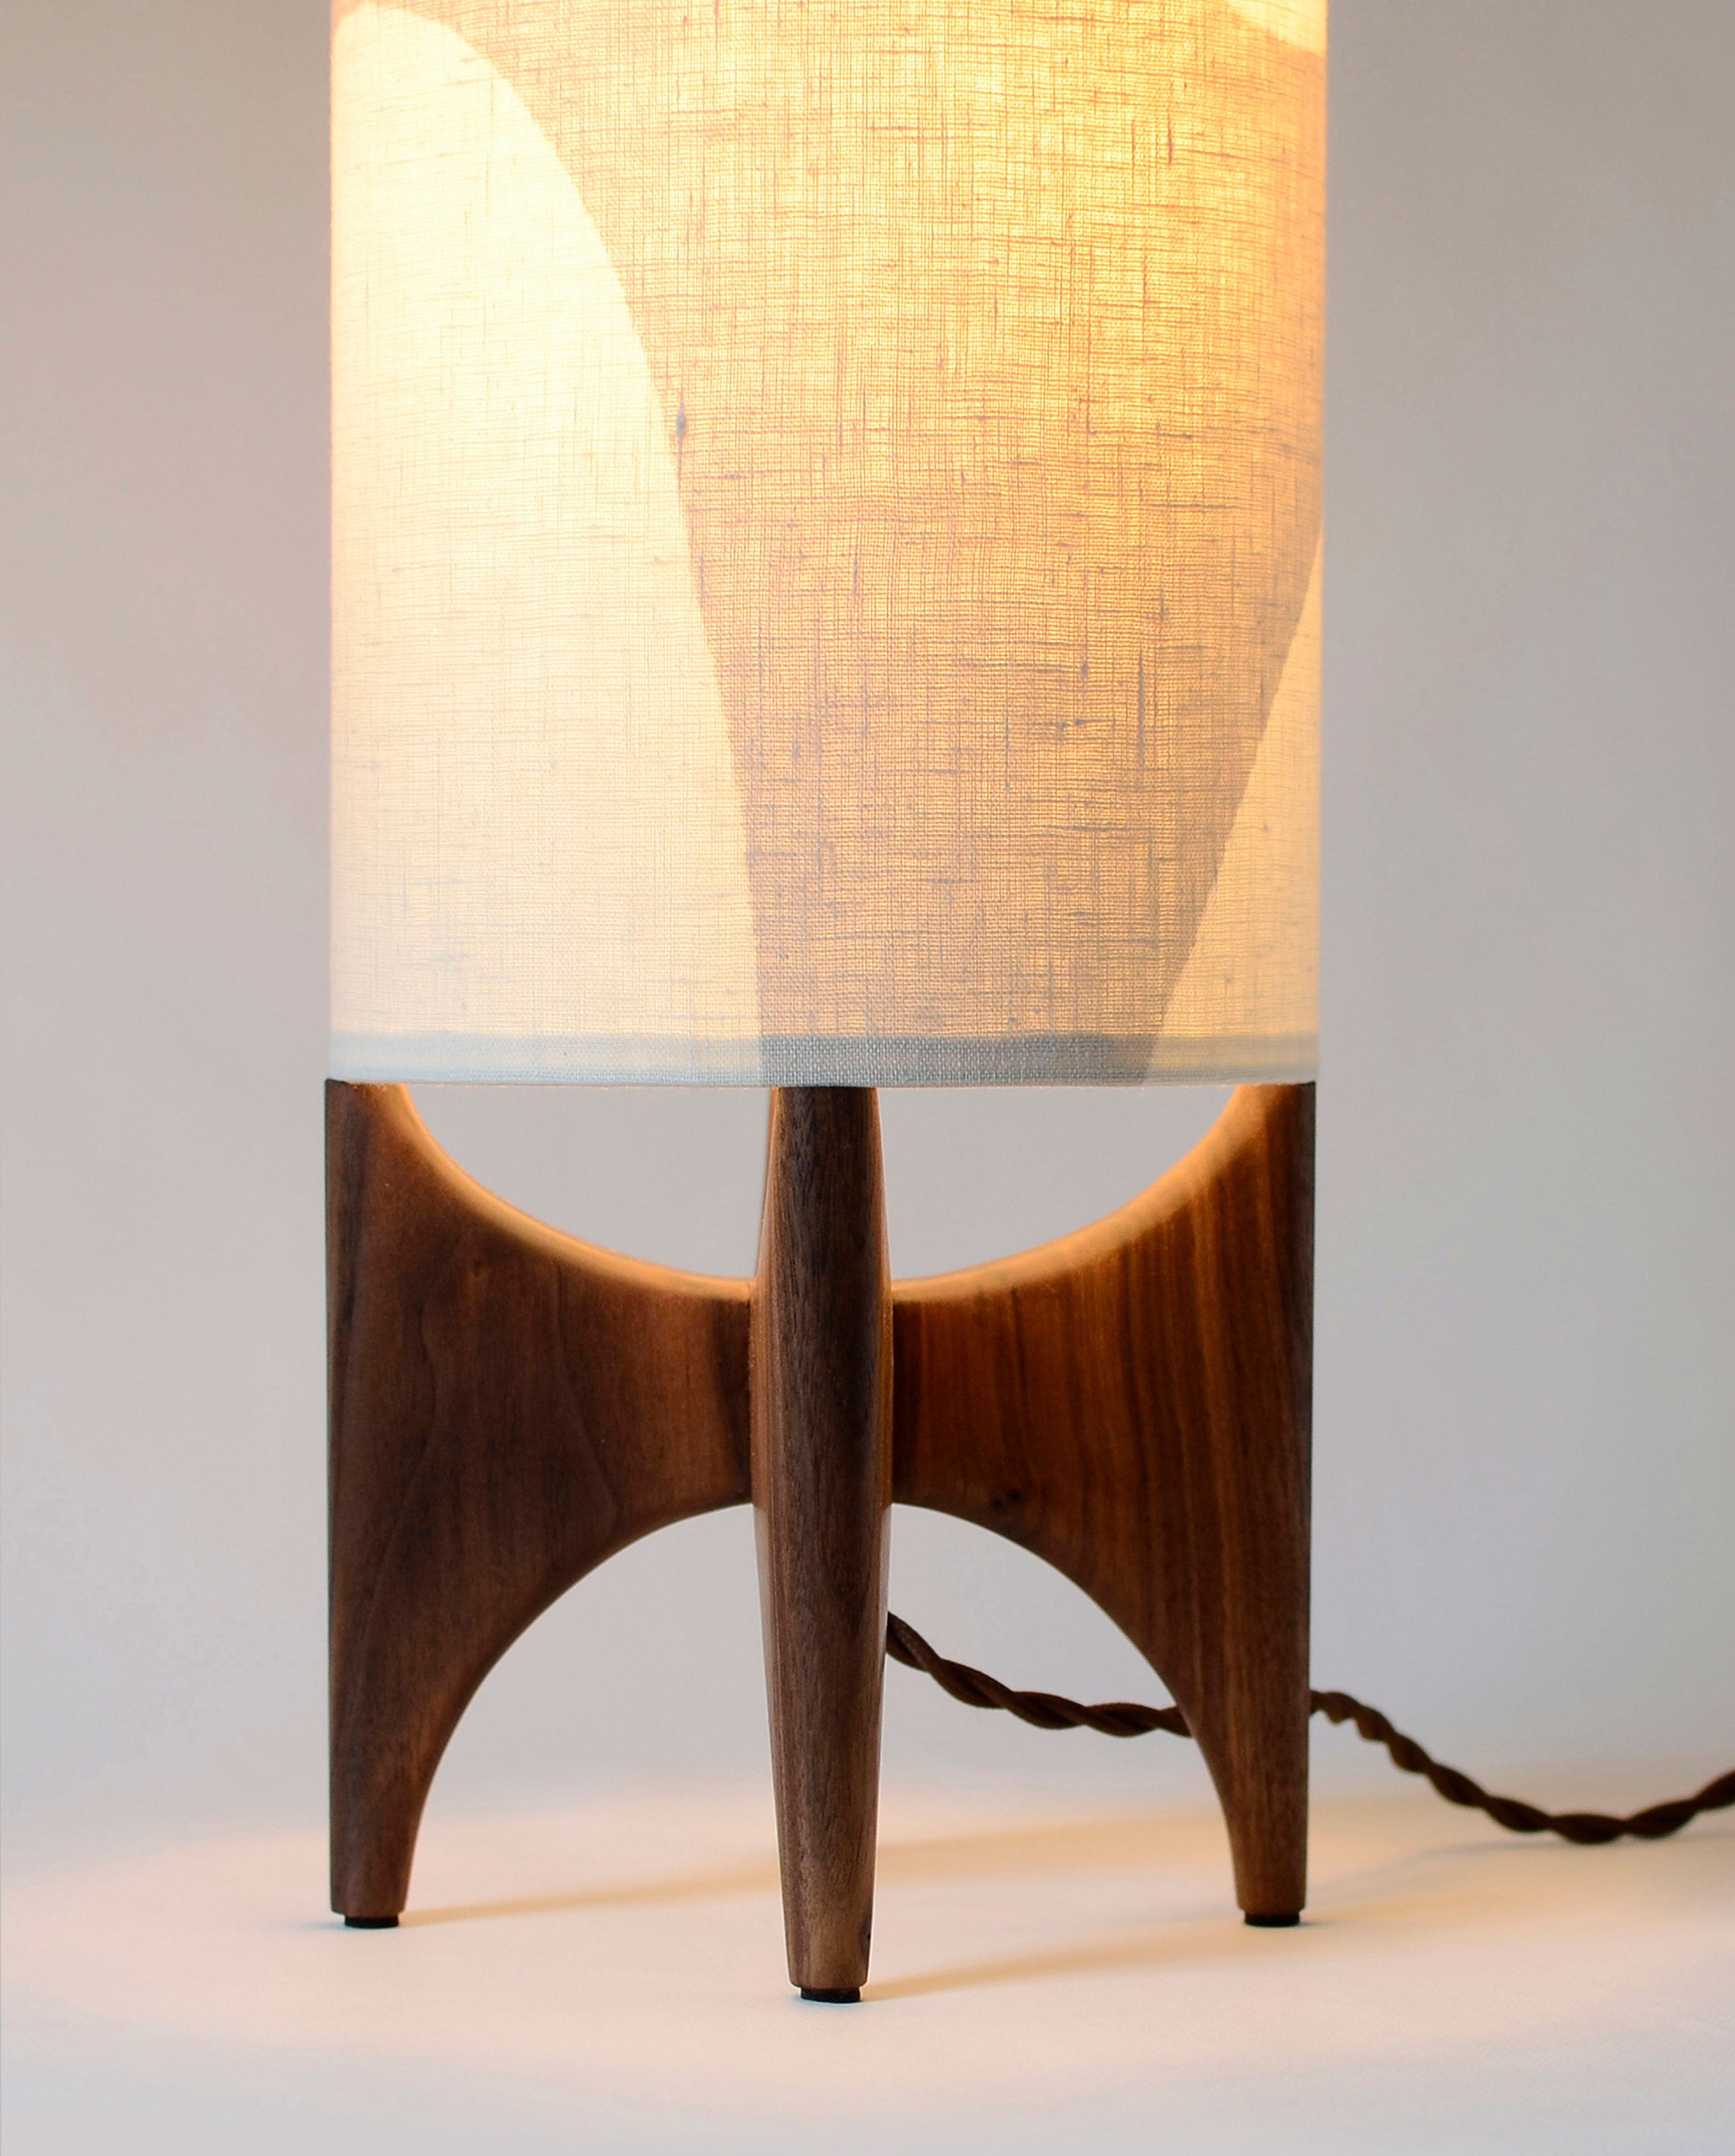 Tall Luma Table Lamp